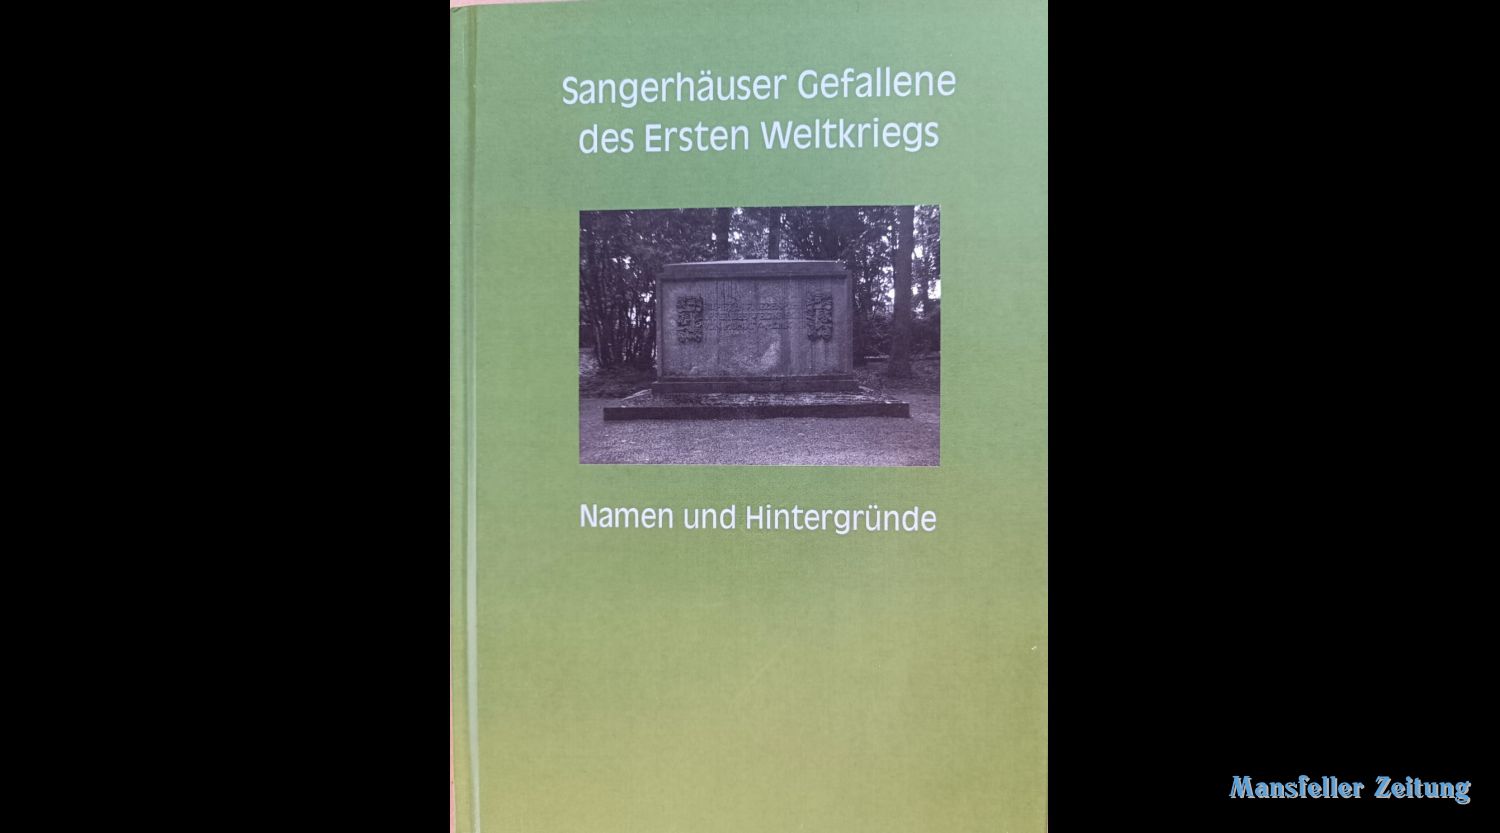 Volkstrauertag in Sangerhausen - 1oo Jahre Denkmal an die Gefallenen